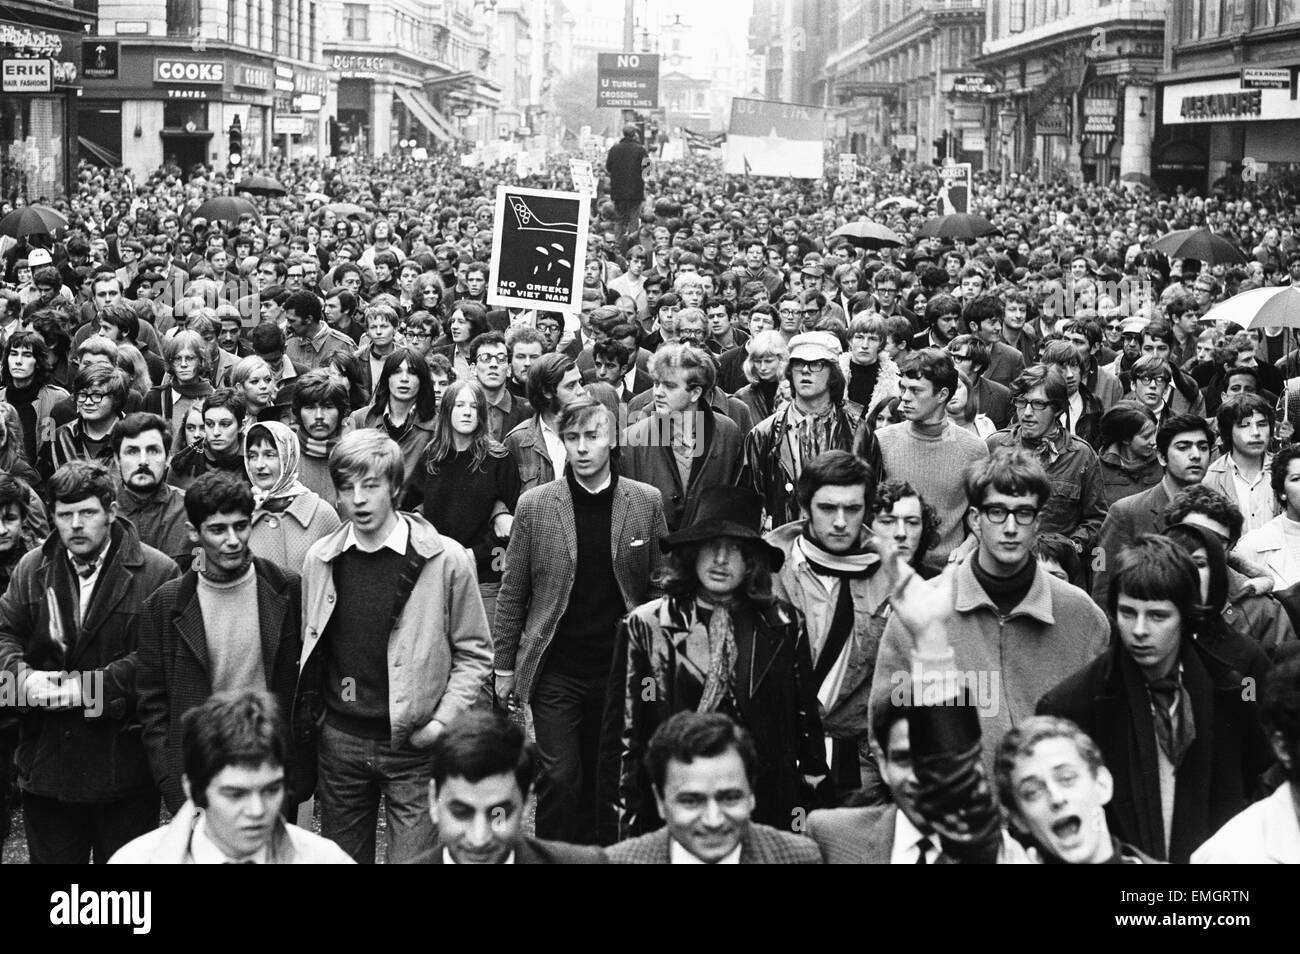 Des foules de manifestants font leur chemin vers le Strand, au centre de Londres pendant une manifestation de masse contre la guerre du Vietnam. 27 octobre 1968. Banque D'Images